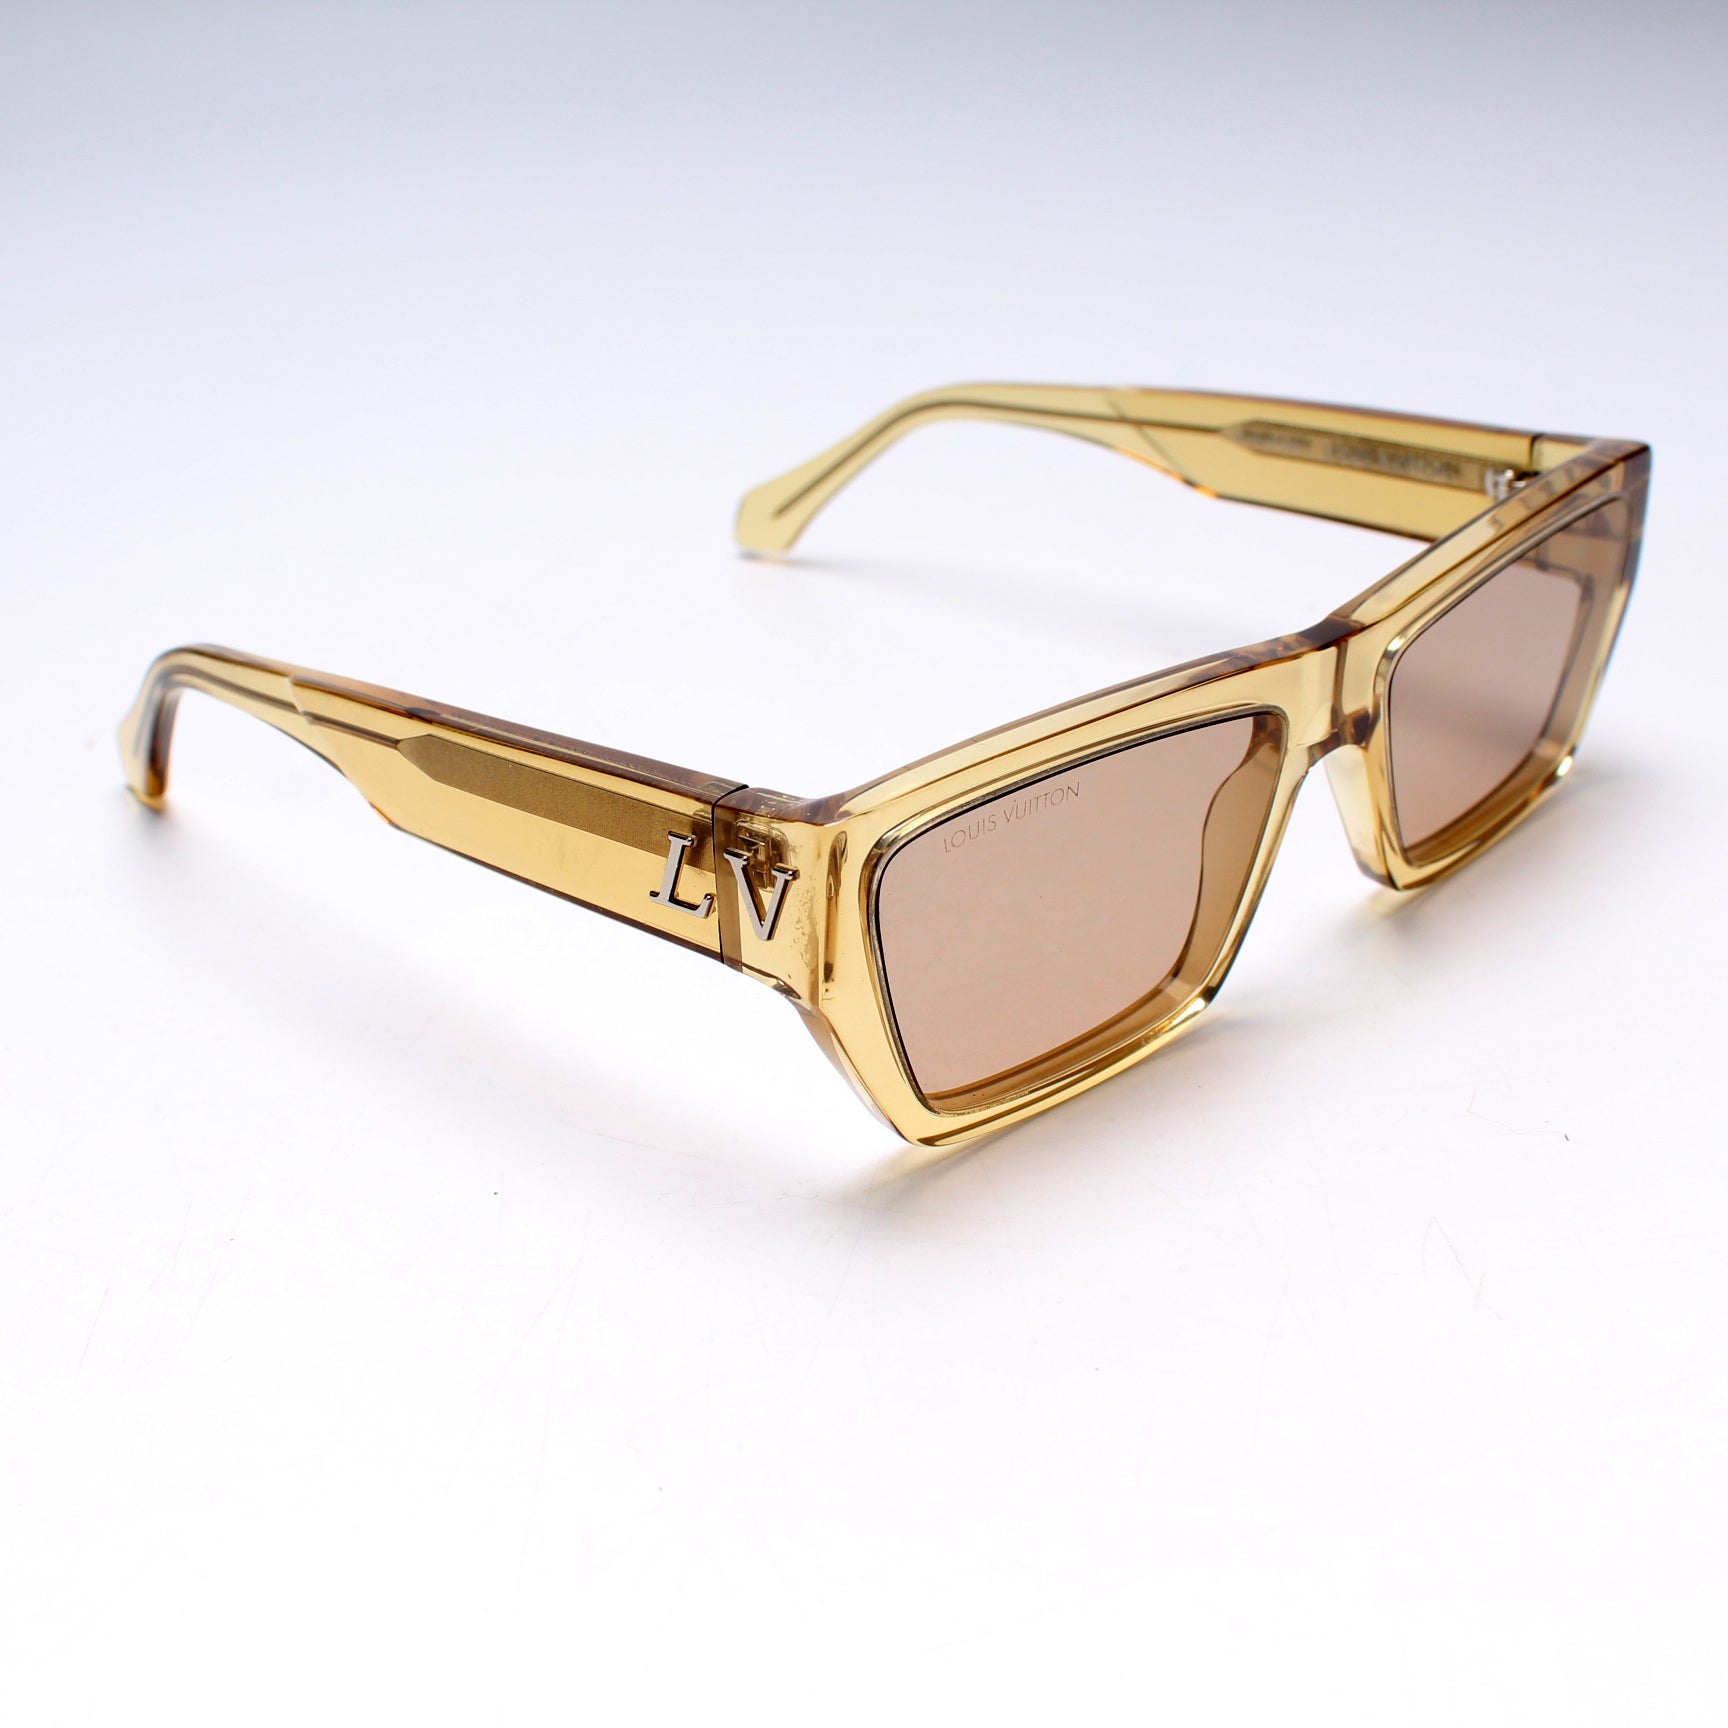 Sold at Auction: Louis Vuitton, Louis Vuitton Sunglasses